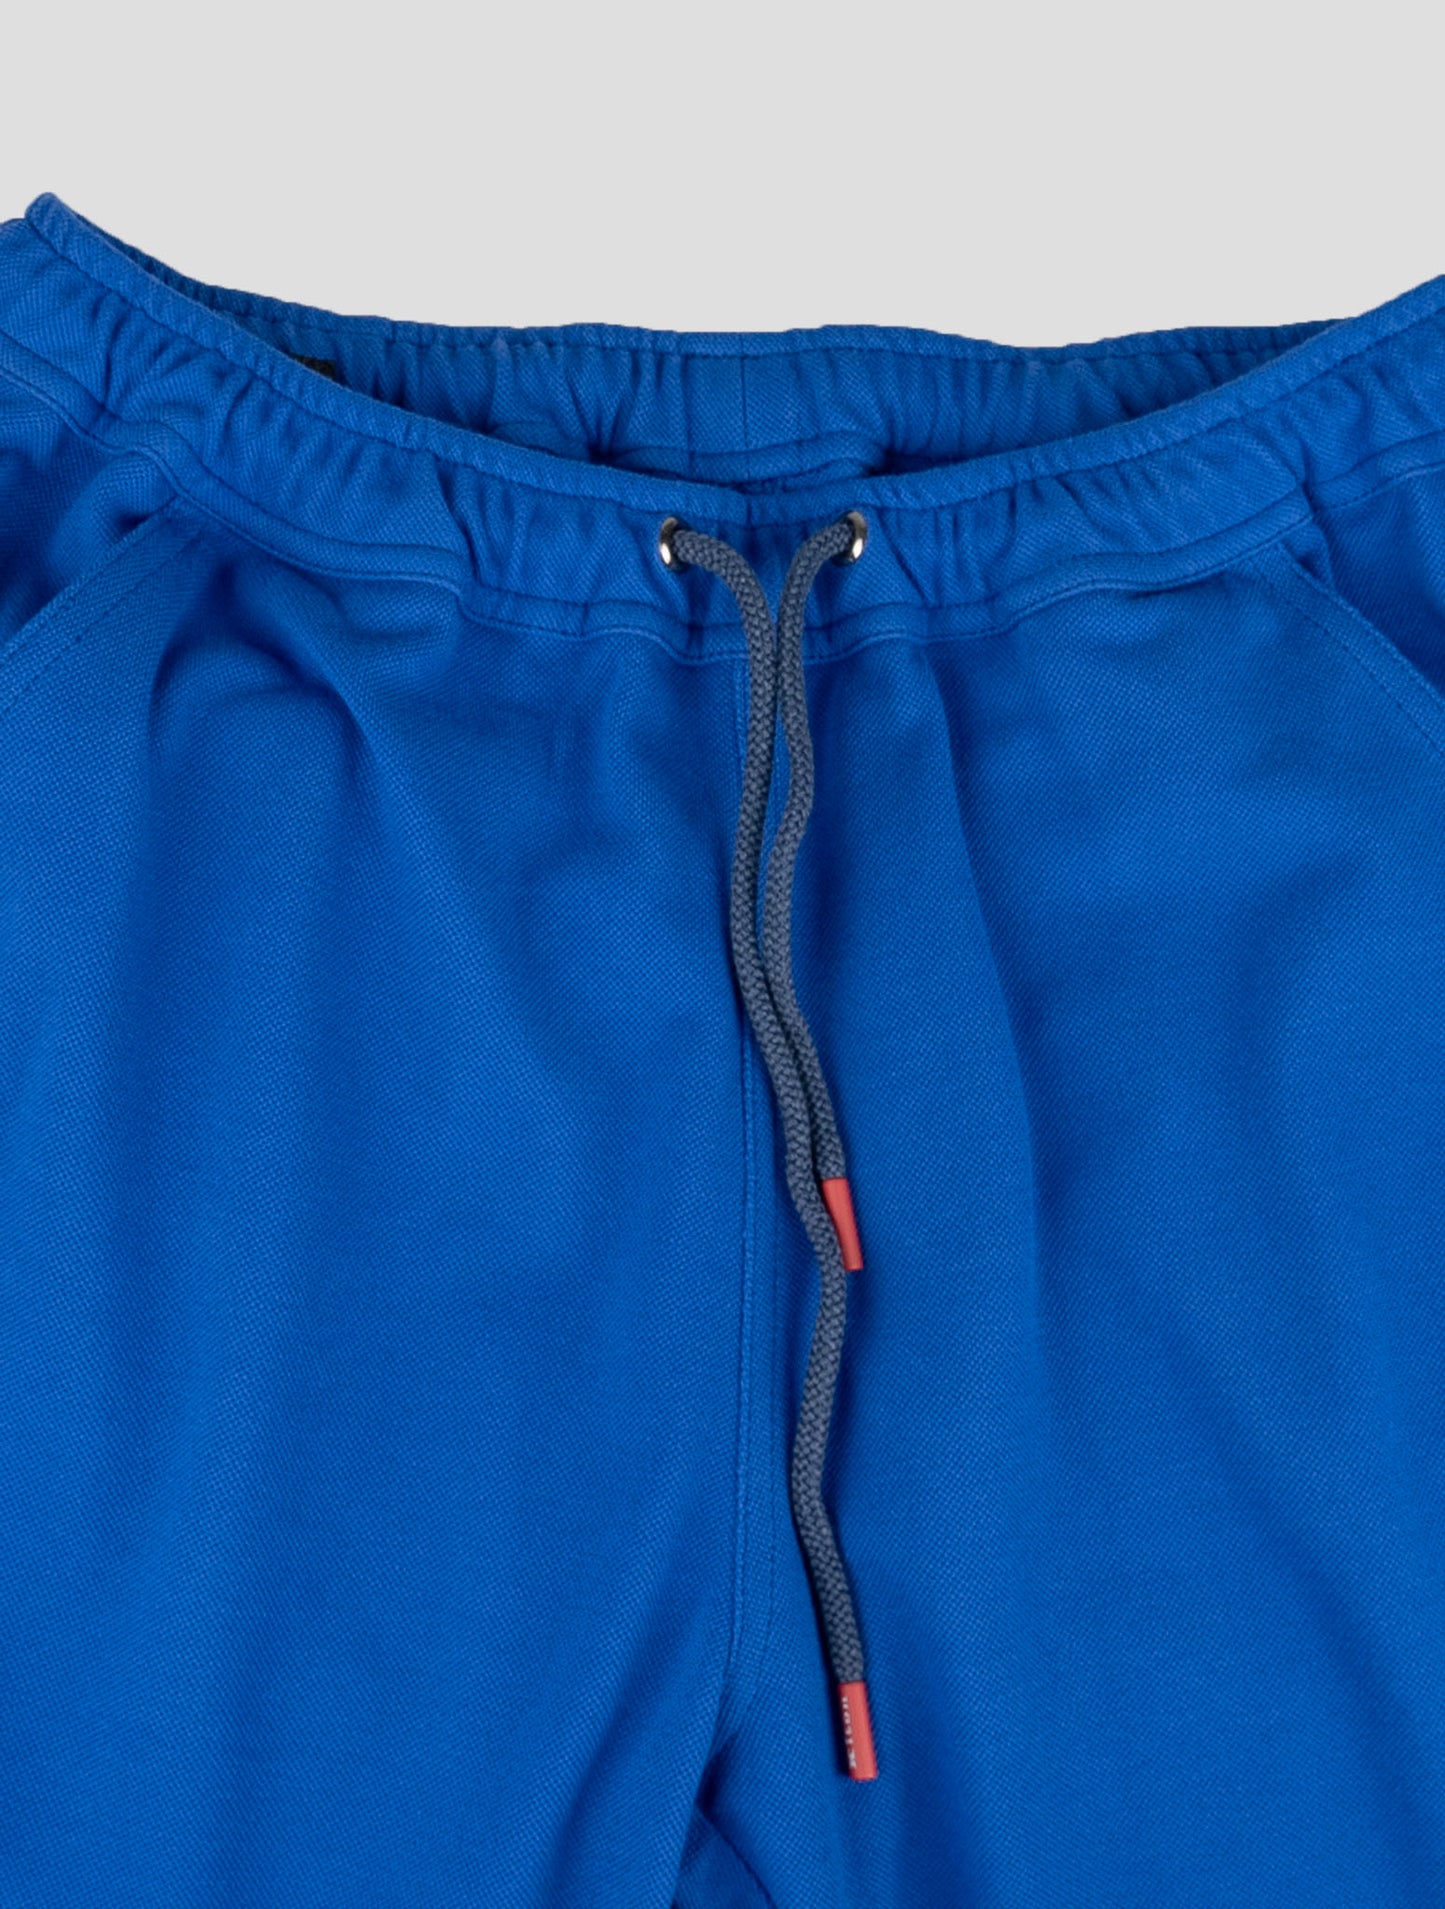 Kiton odgovarajuća odjeća - crna Umbi i plava trenirka kratke hlače